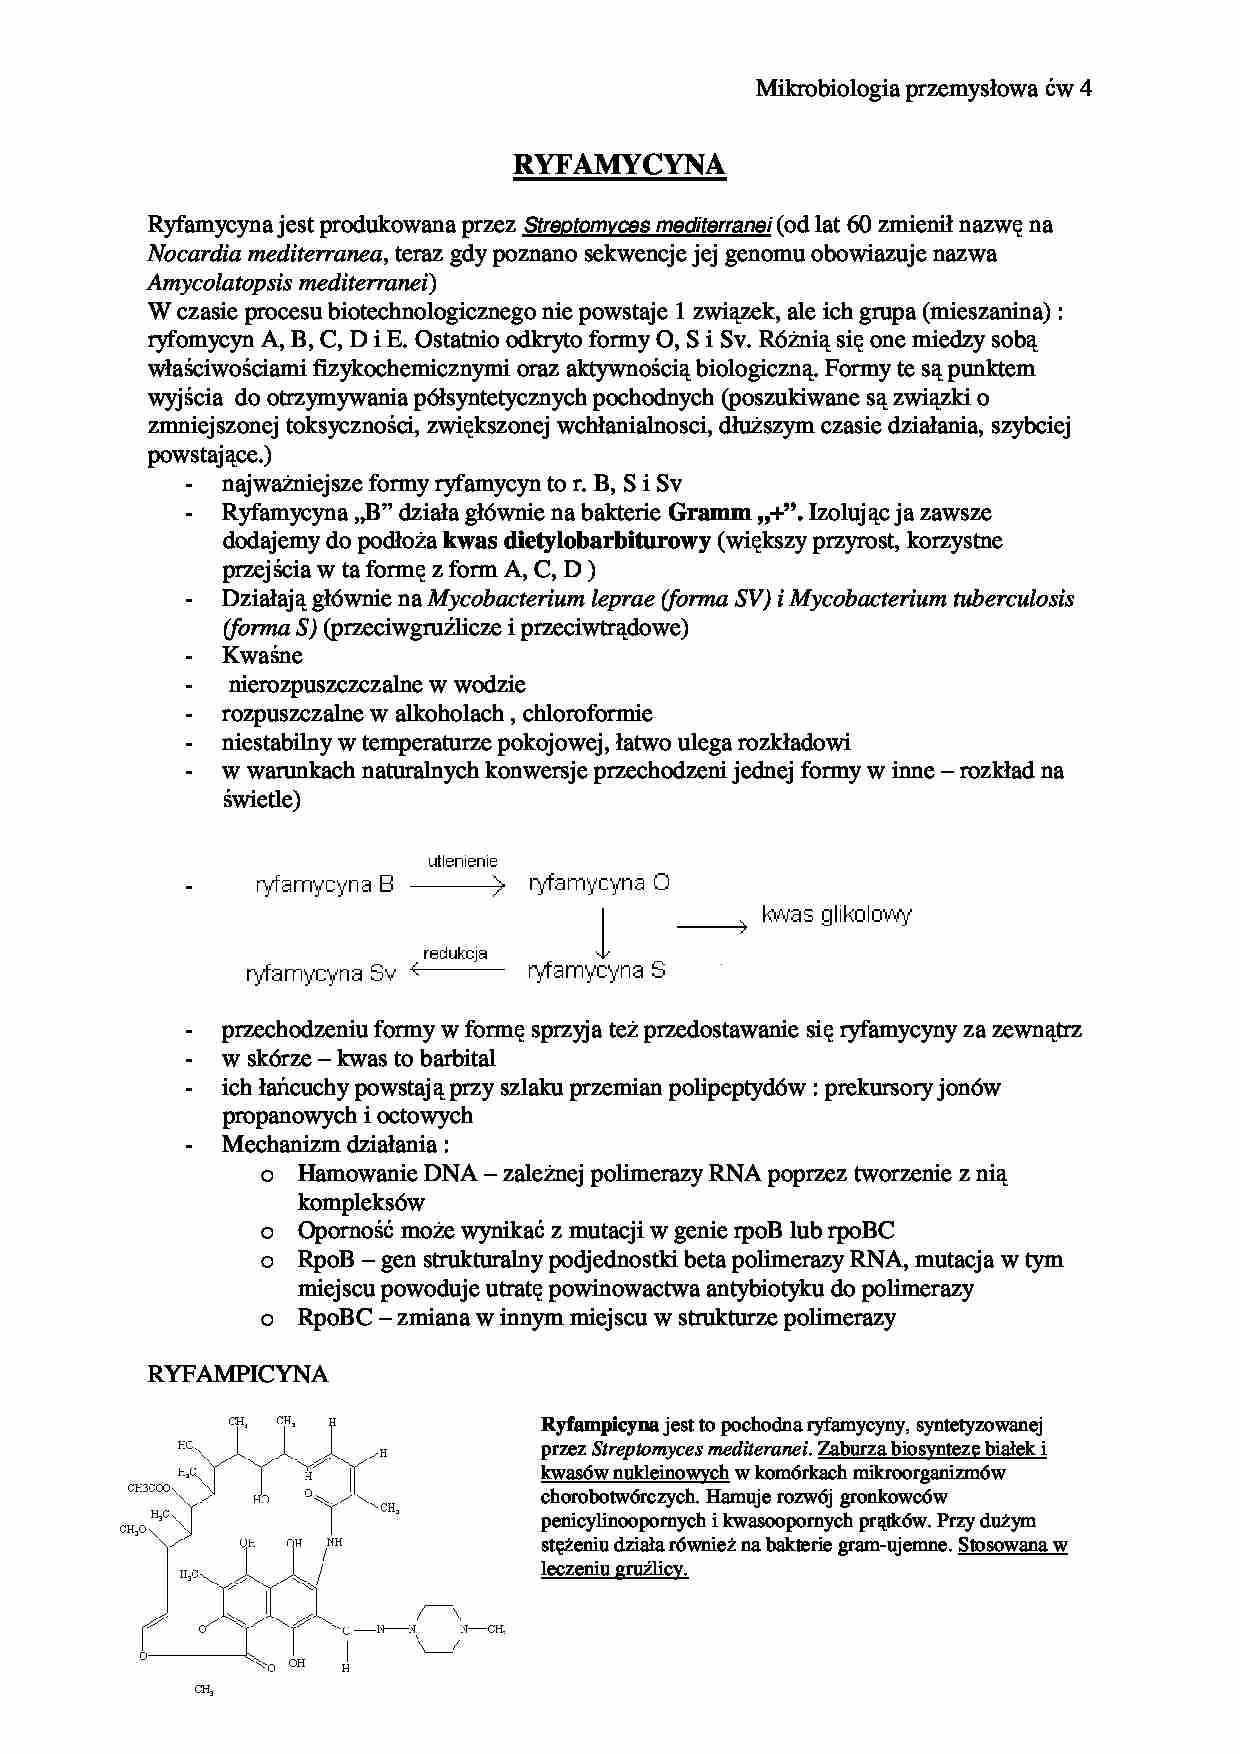 Ryfamycyna-opracowanie - strona 1